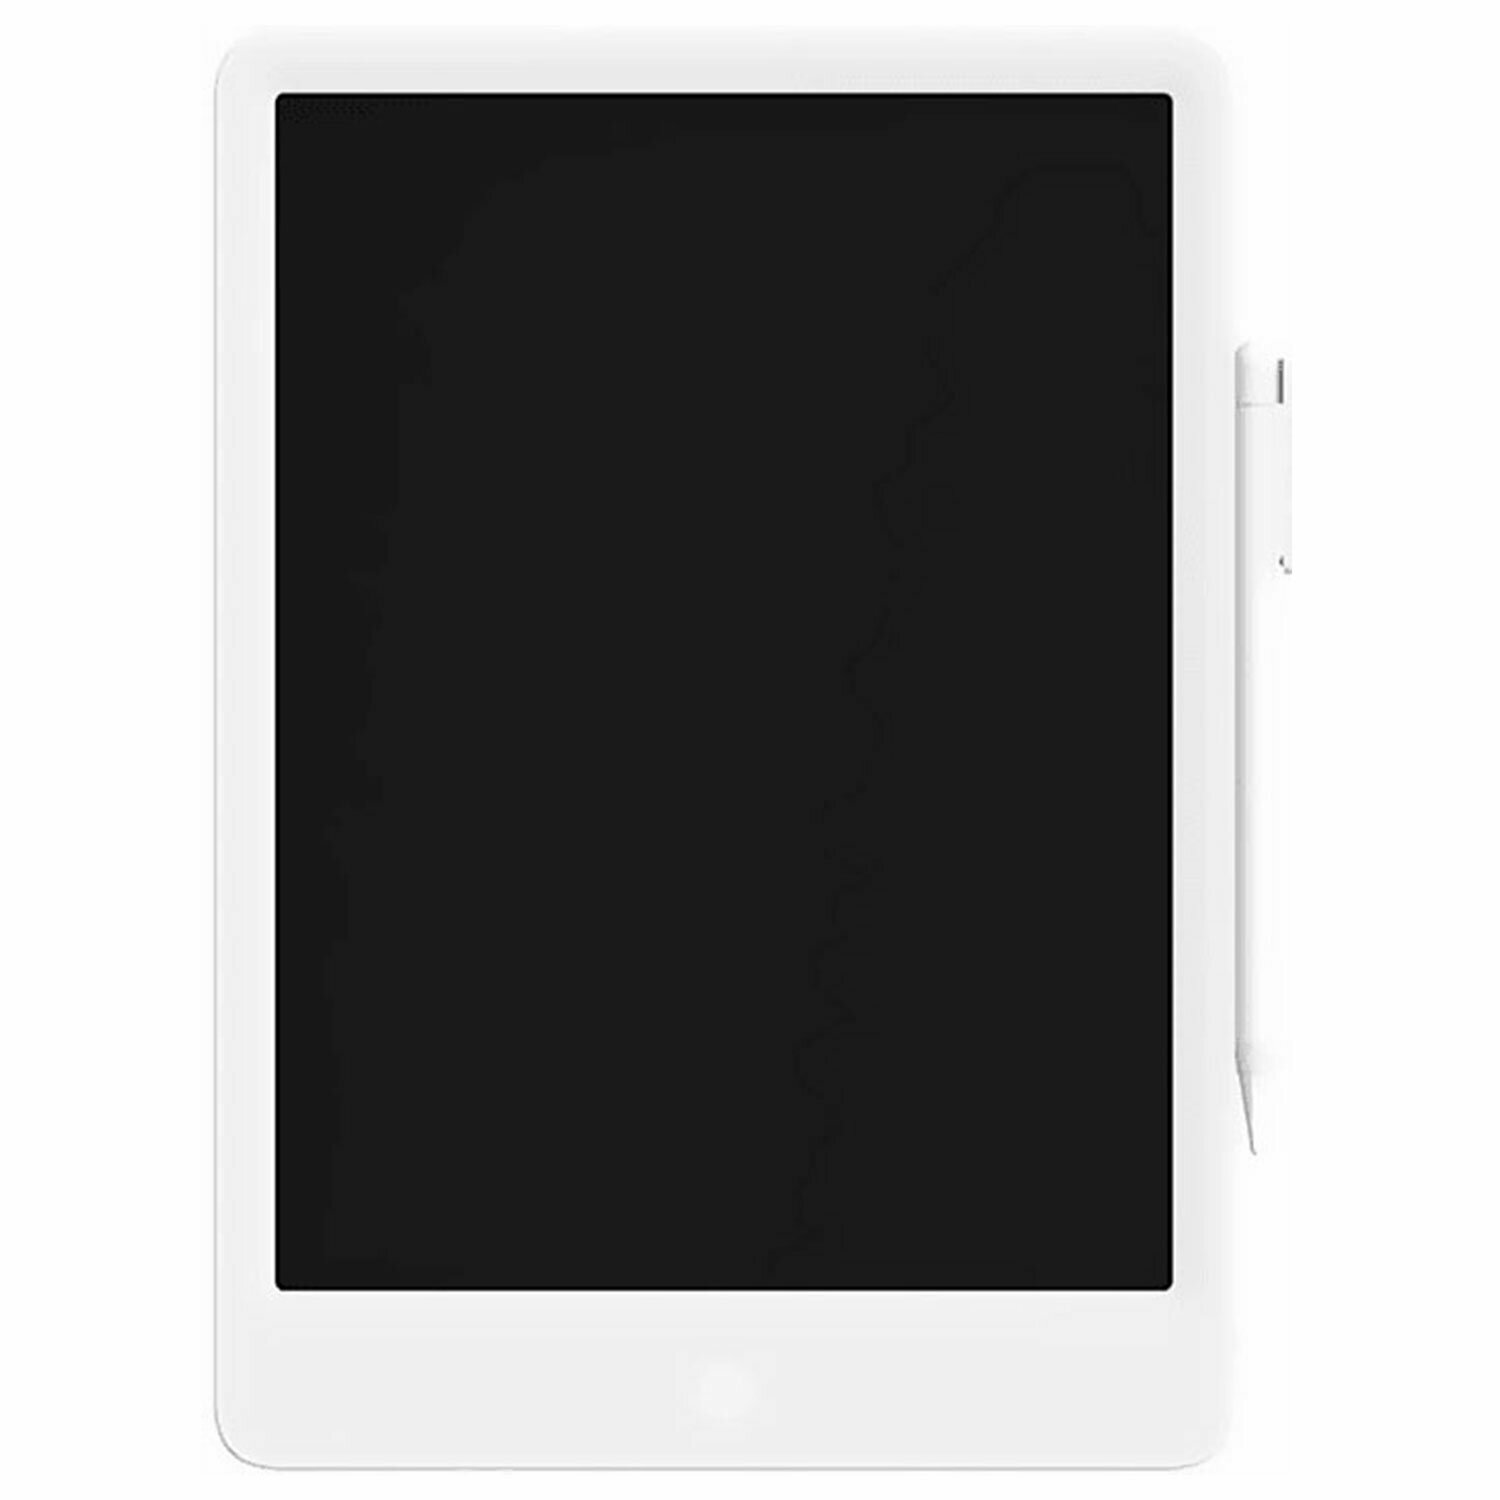 Планшет графический XIAOMI Mi LCD Writing Tablet 13.5" (Color Edition), цветной экран, белый /Квант продажи 1 ед./